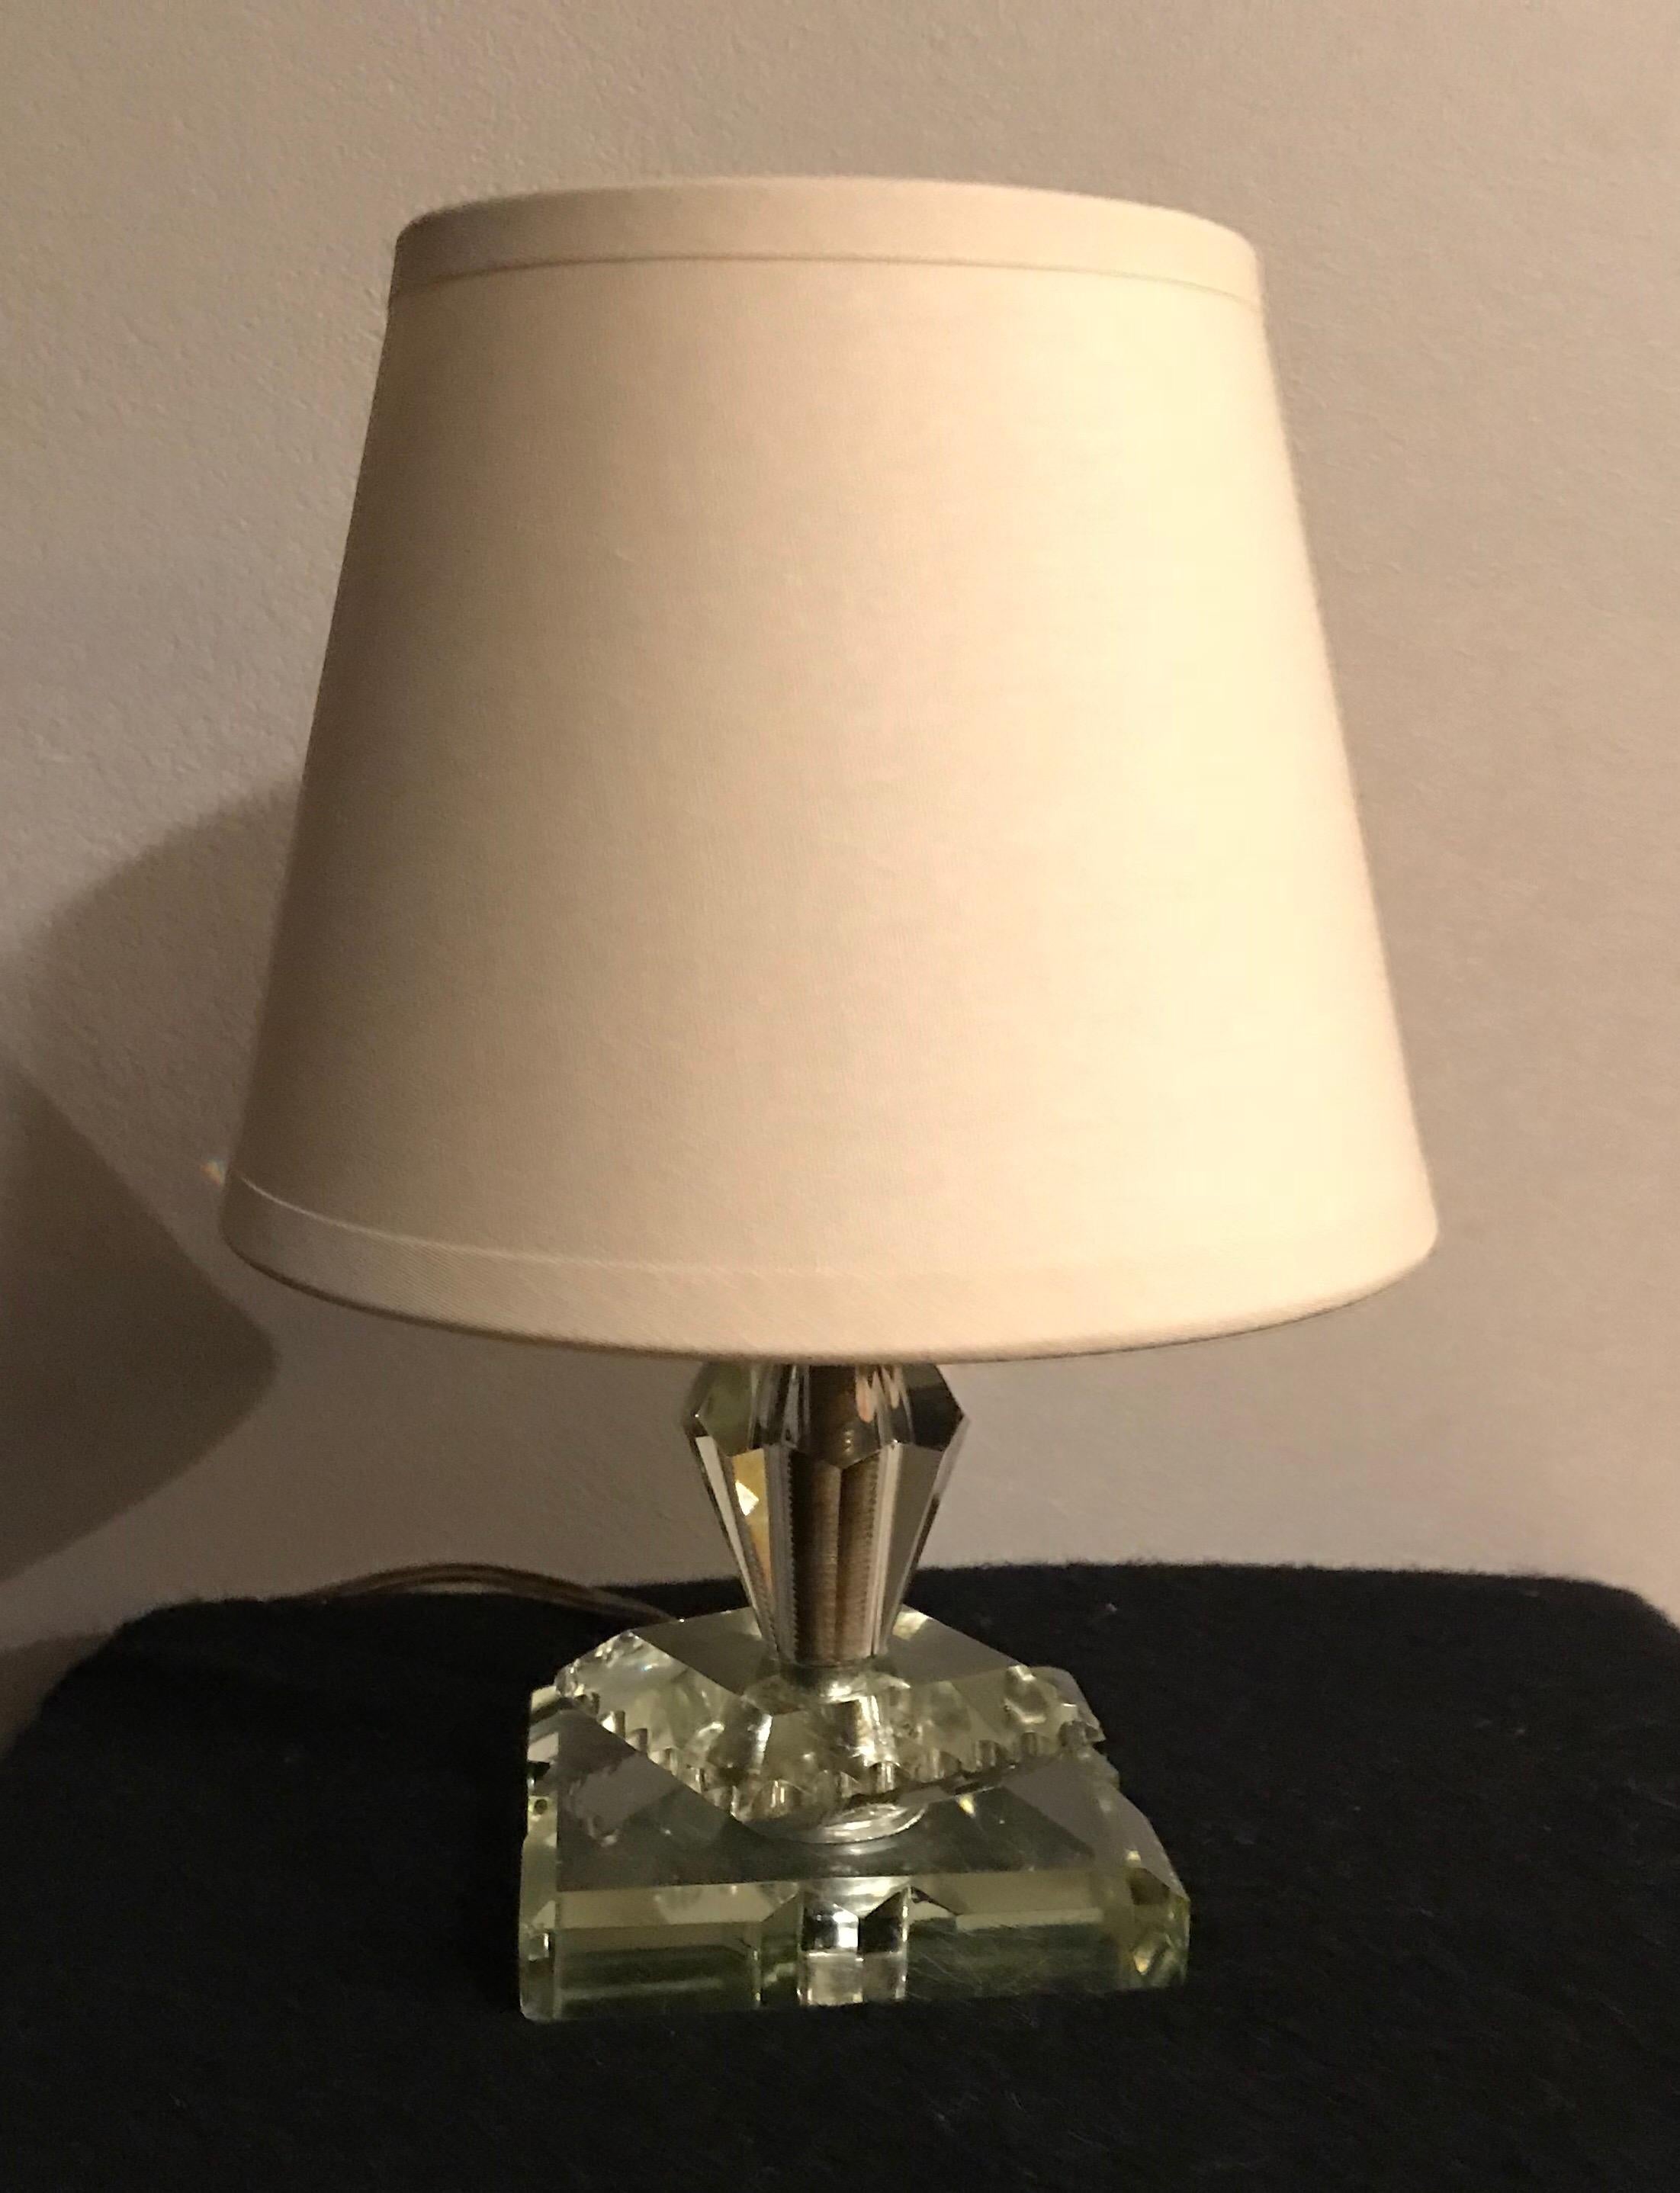 Très charmante lampe de table vintage de style Adnet avec abat-jour neuf en coton en très bon état général.
Mesures : H 22 cm x D 15,5 cm
Sans l'abat-jour H 15 cm x P 8,5 cm
Base l 8,5 cm x L 8,5 cm.